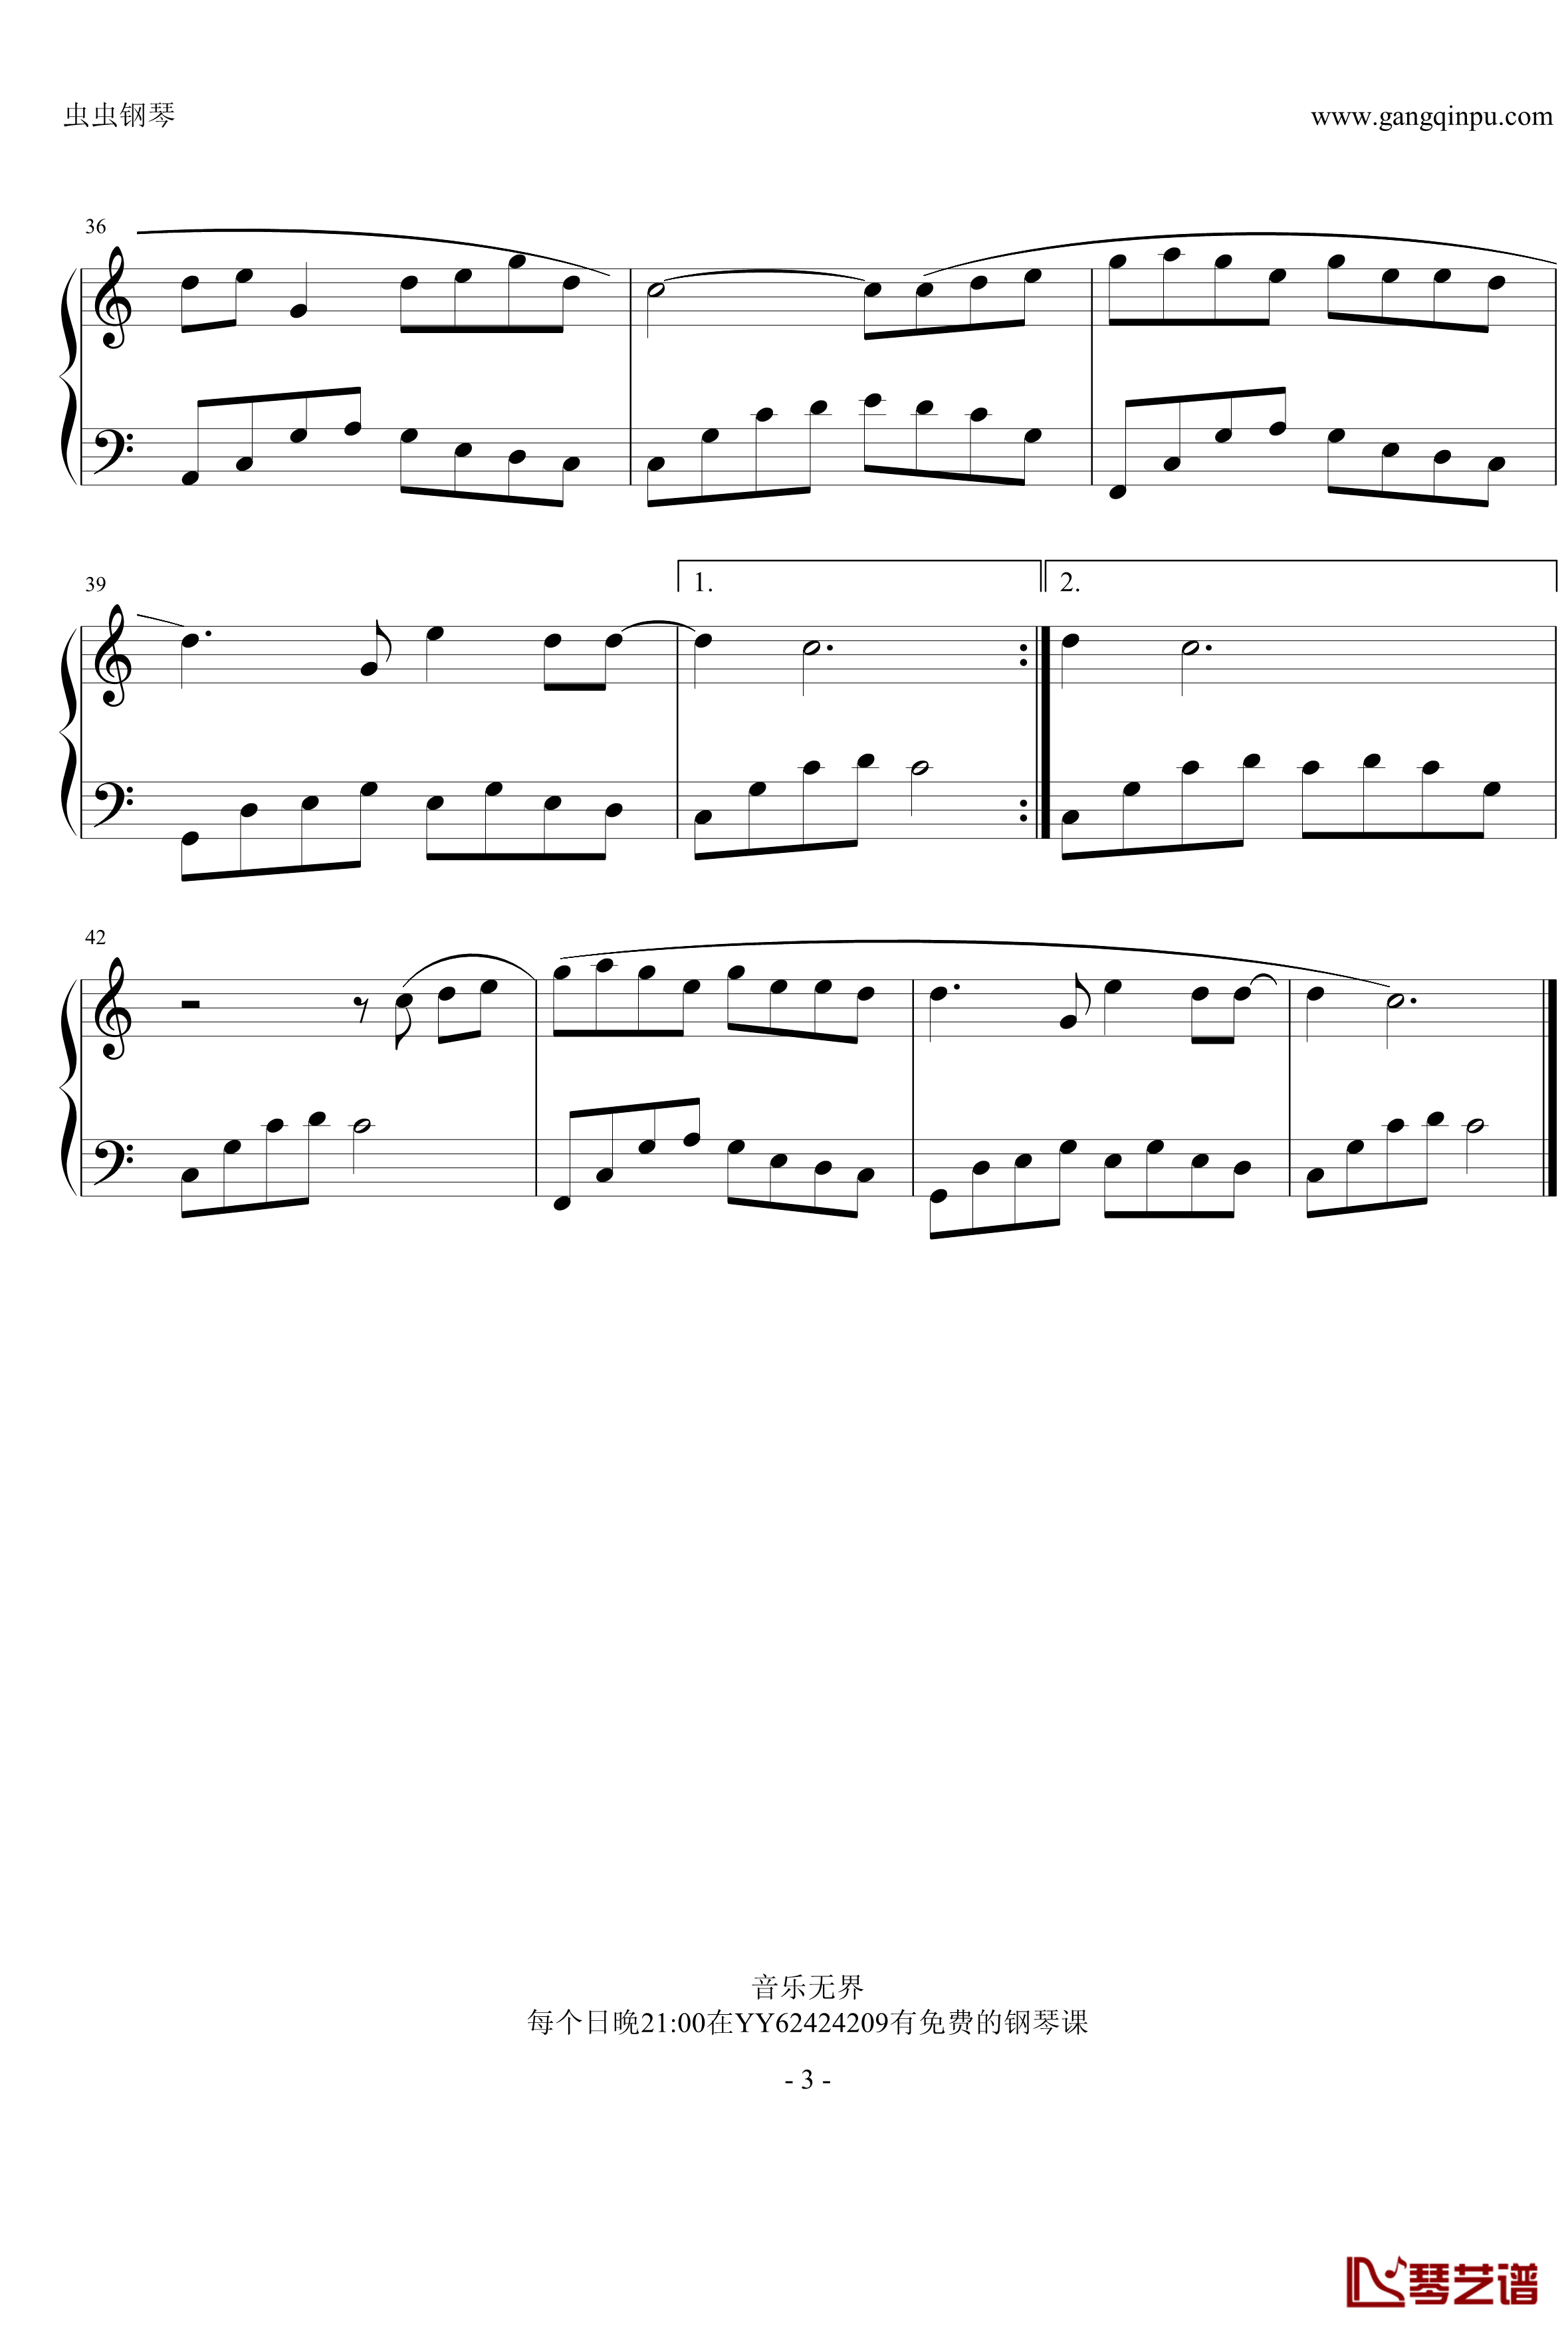 青花瓷钢琴谱-无升降号简单版-周杰伦3